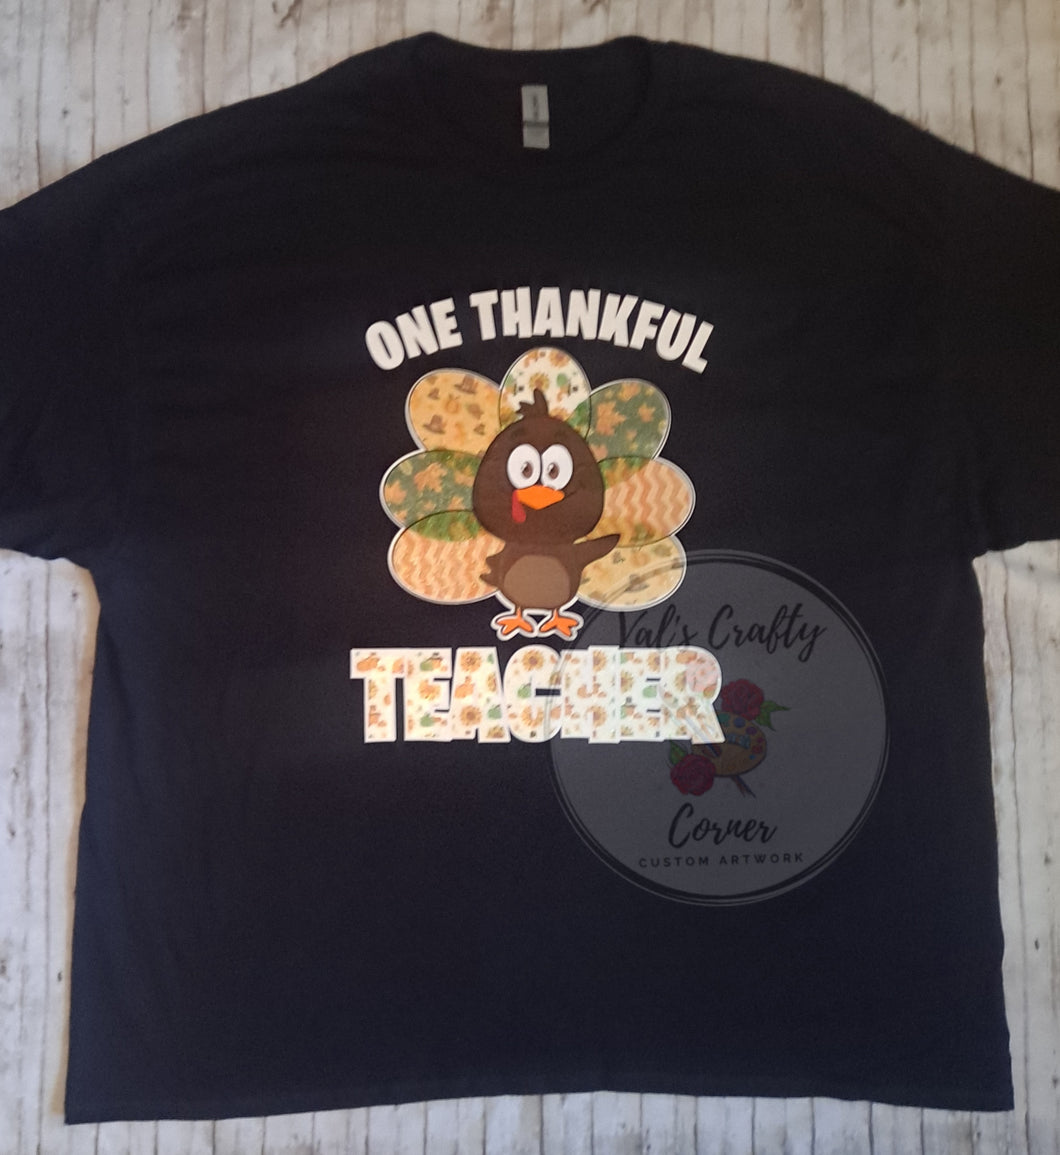 One Thankful Teacher T-shirt